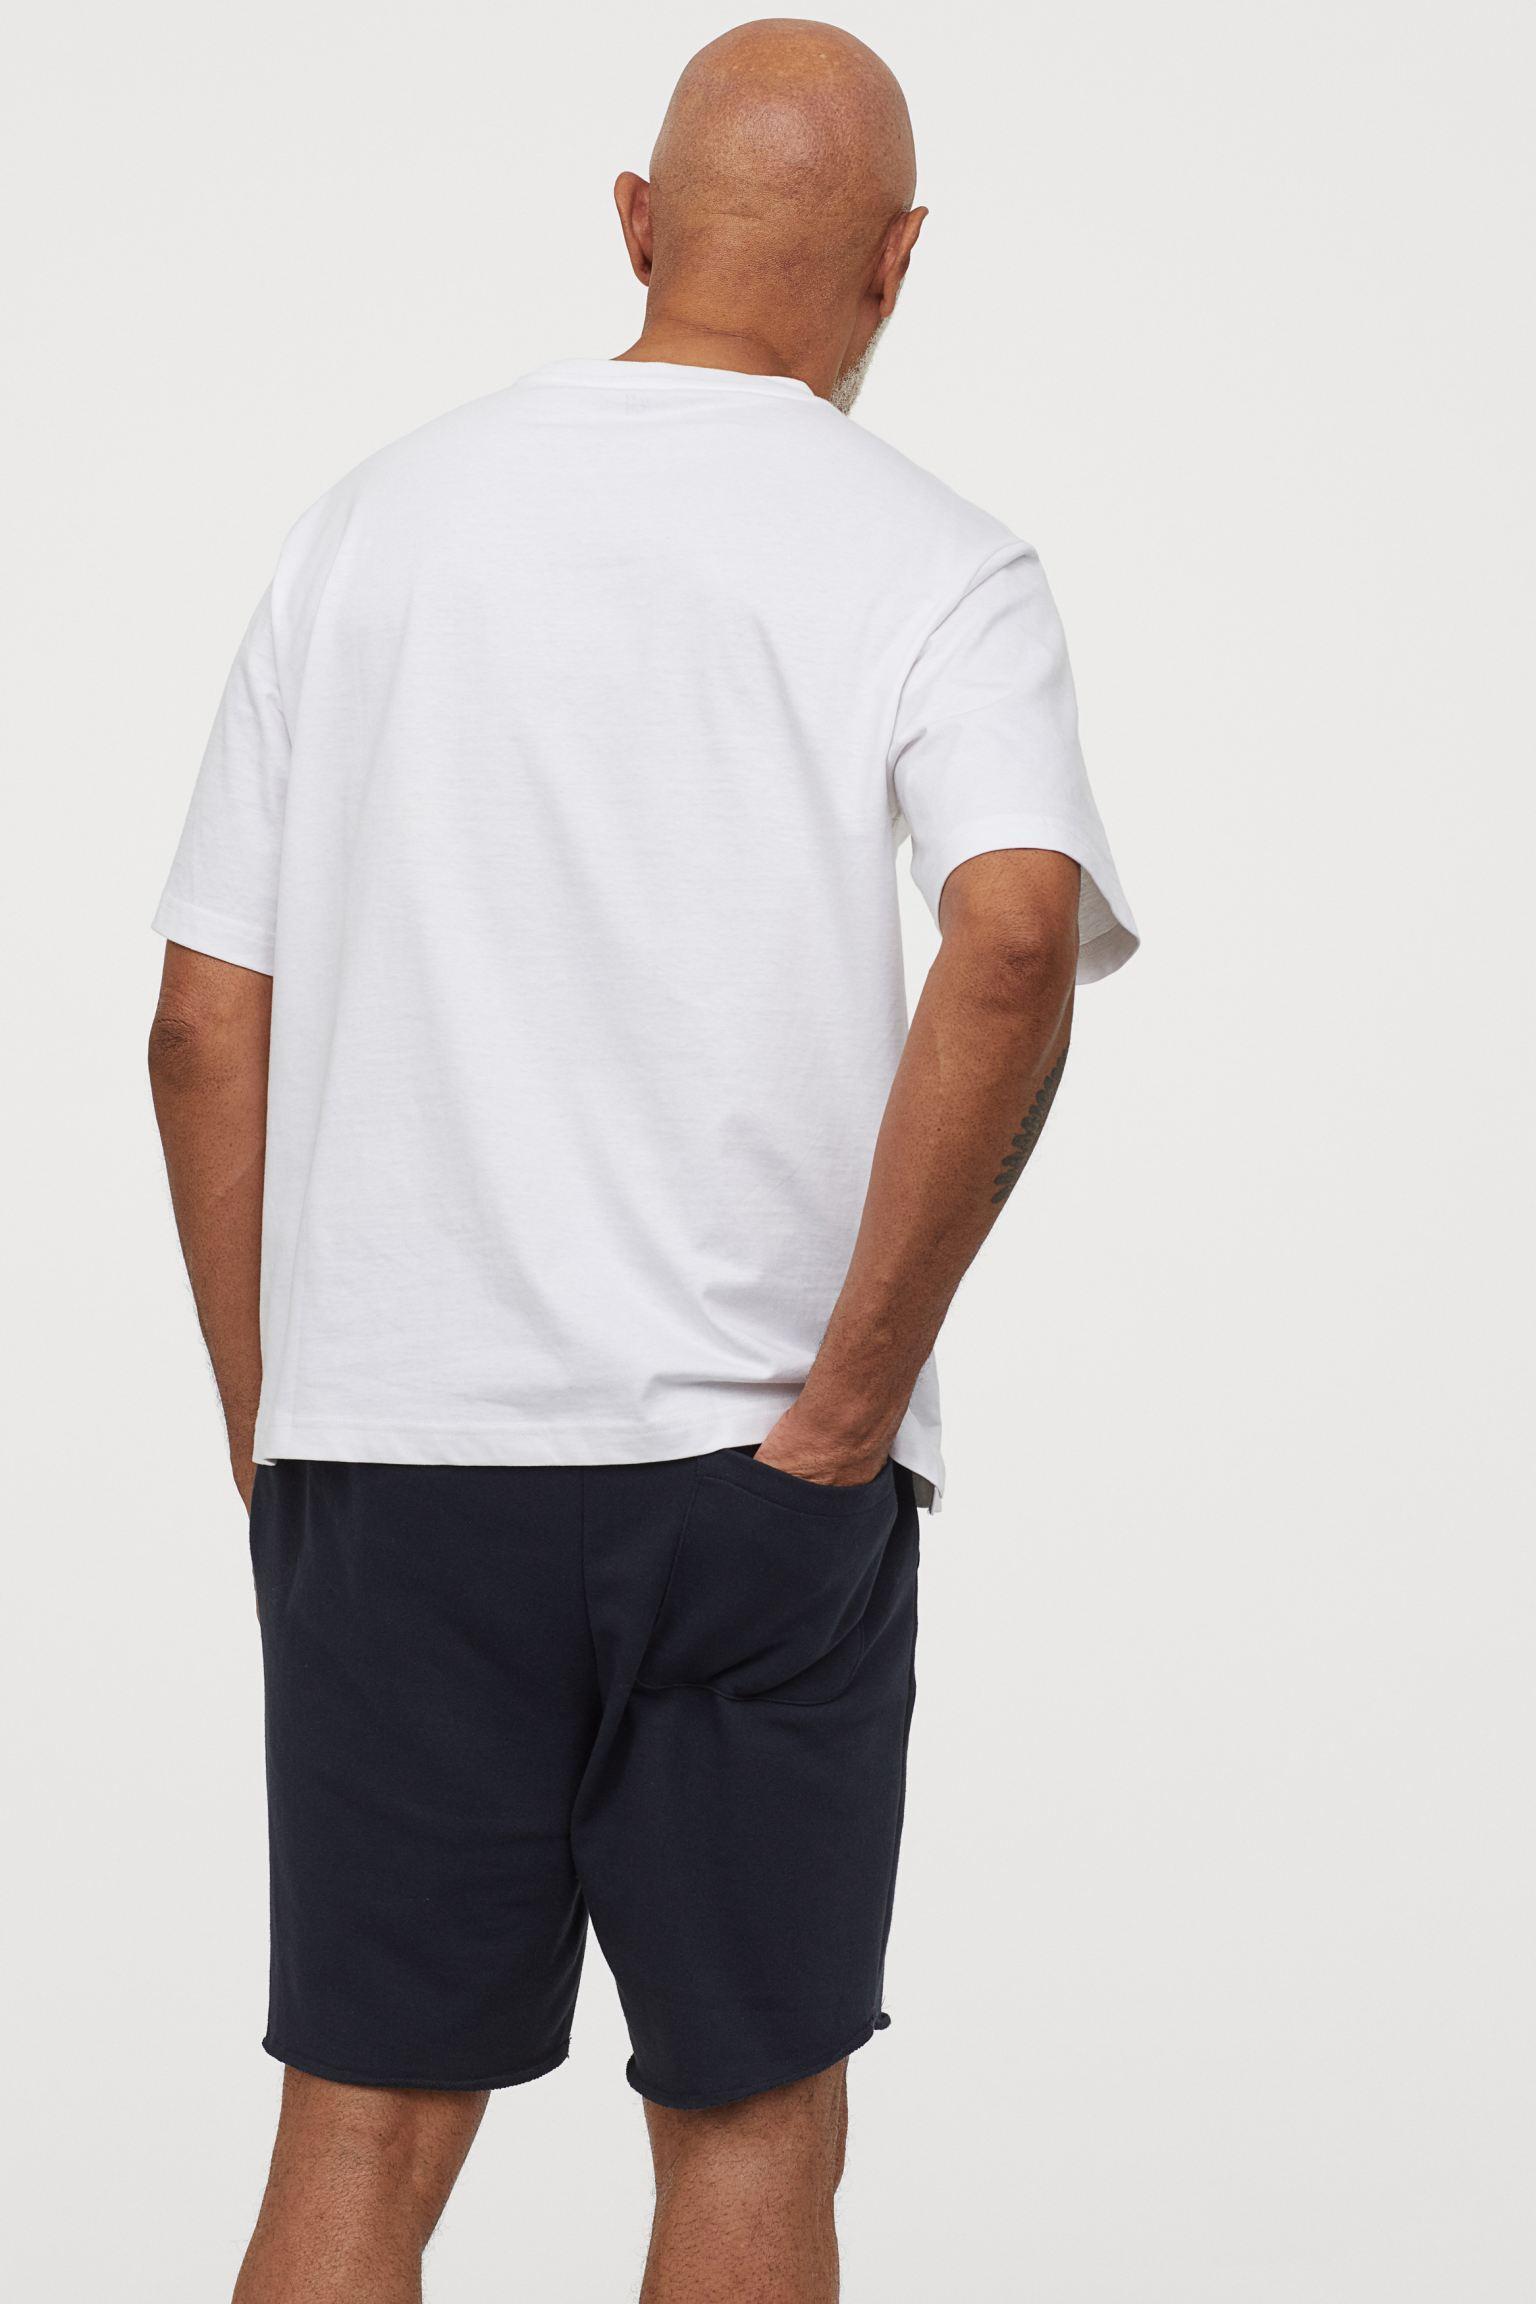 Отзыв на Спортивные шорты нормальные Fit из Интернет-Магазина H&M